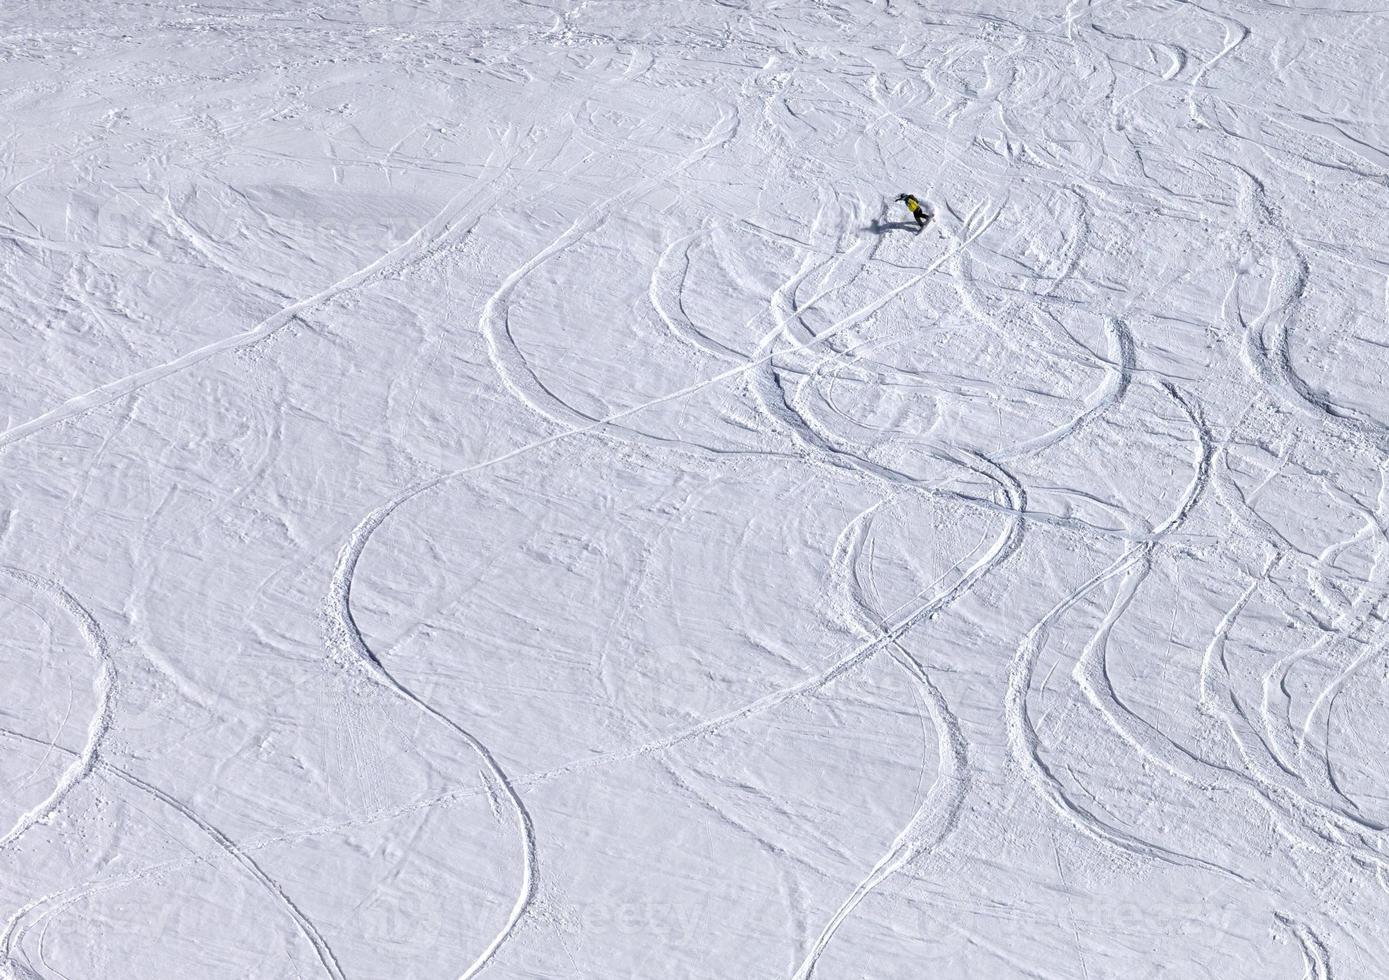 Snowboarder en descente sur une piste hors piste avec de la neige récemment tombée photo